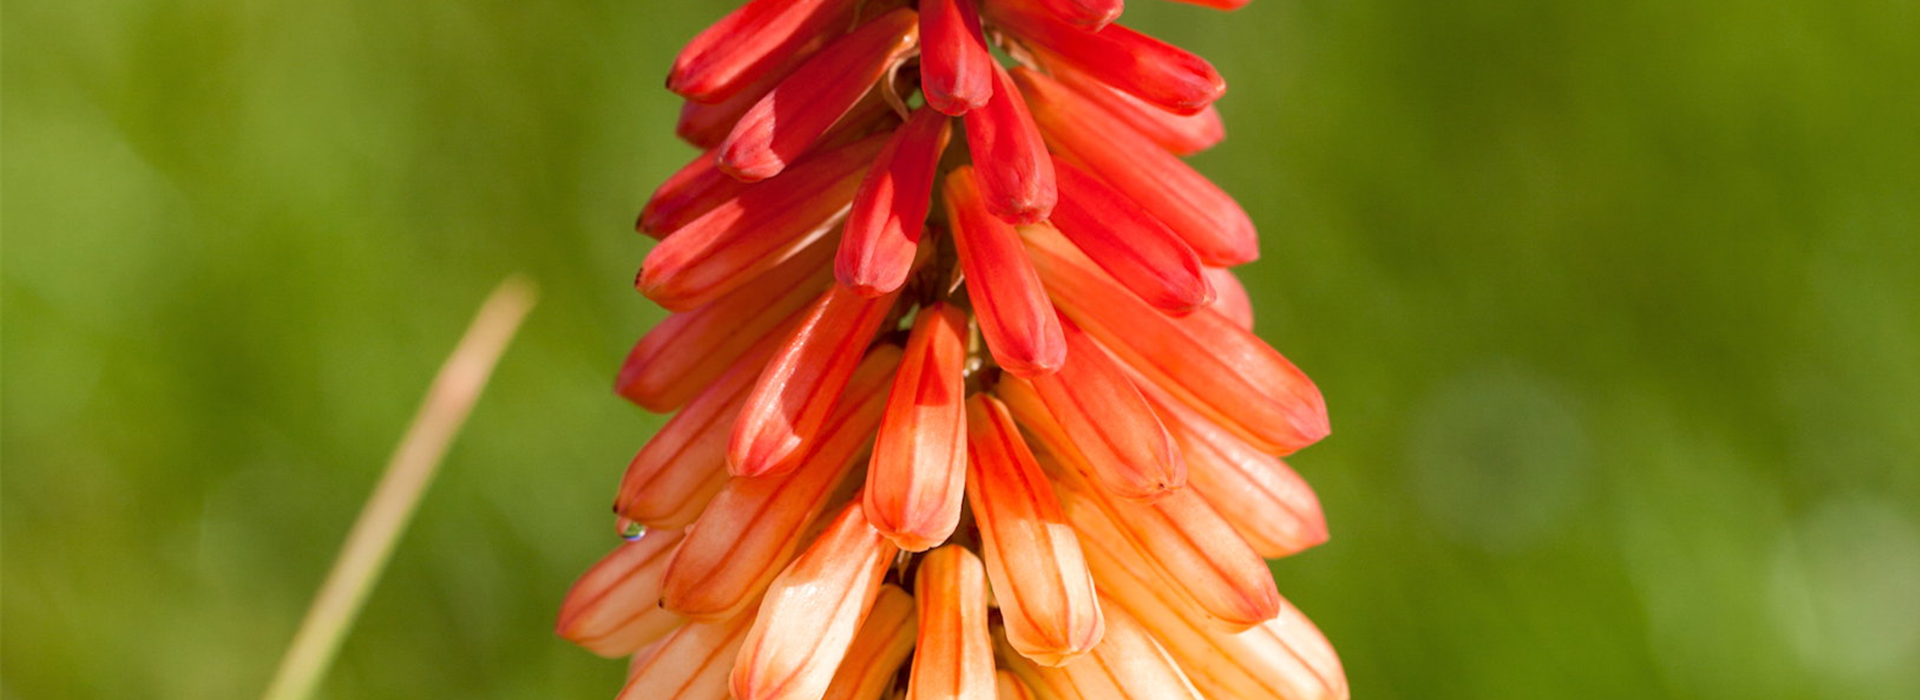 Fackellilie - Einpflanzen im Garten (thumbnail)